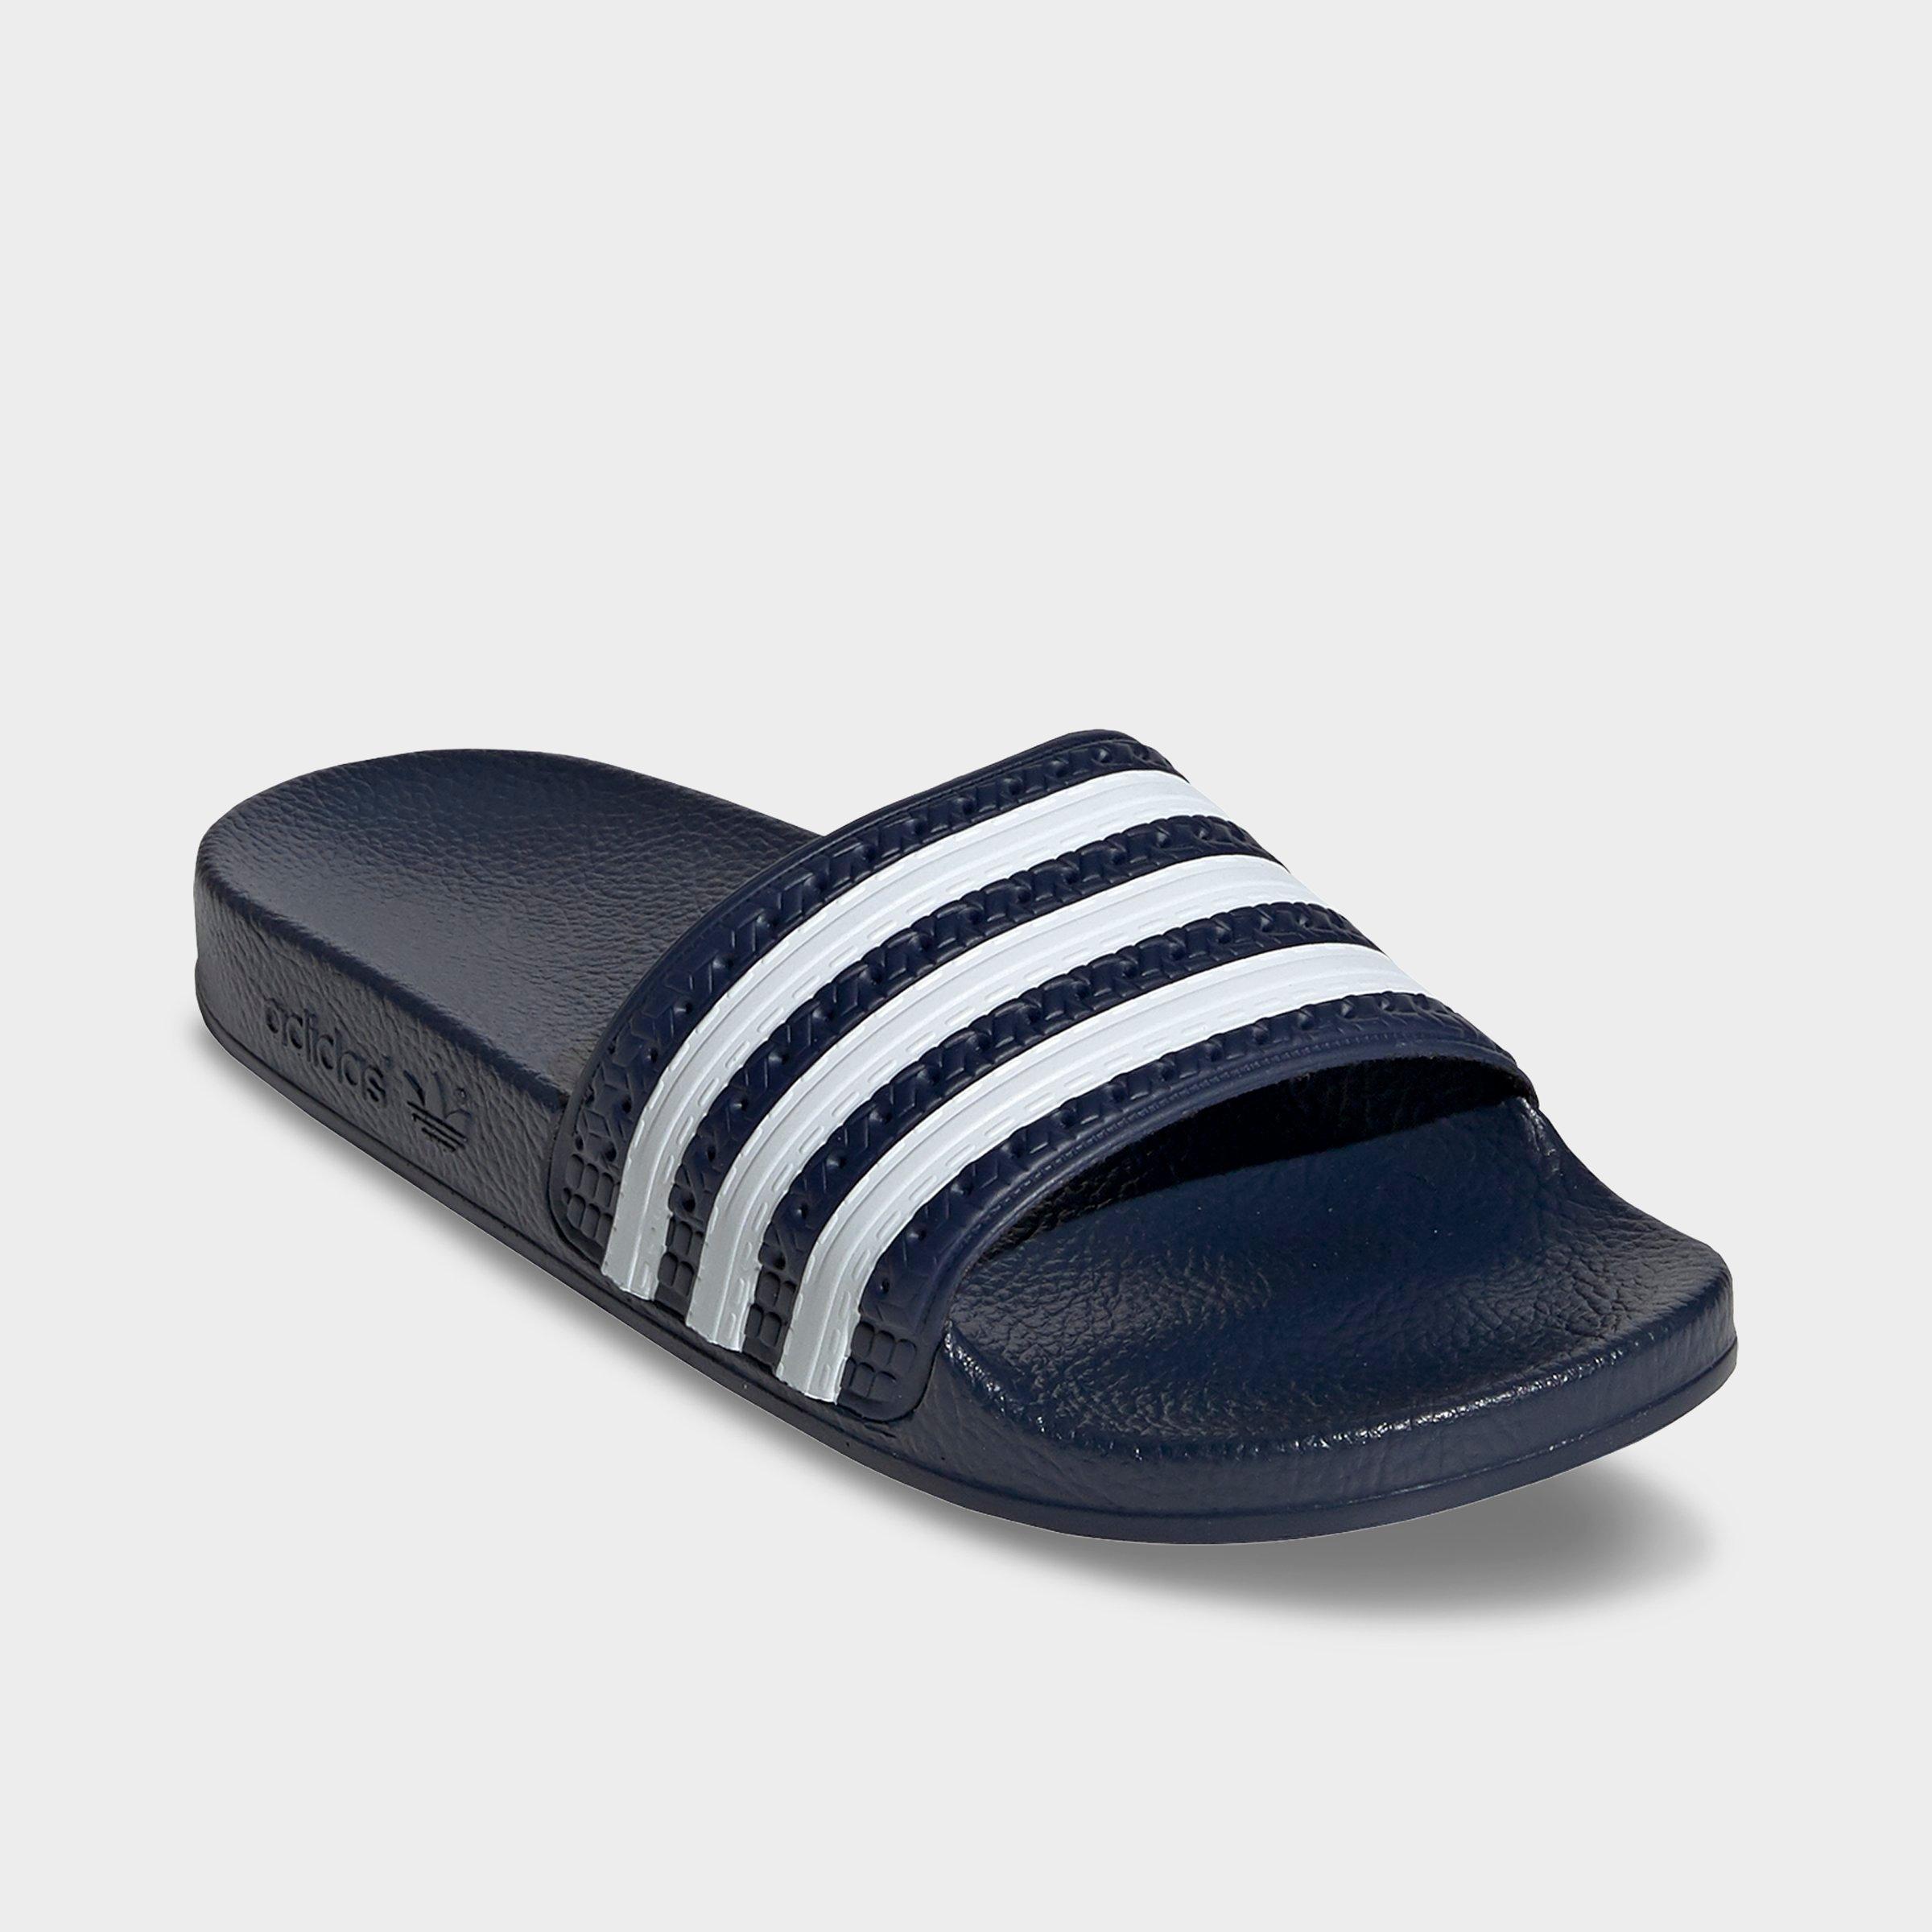 adidas adilette kid's slide sandals